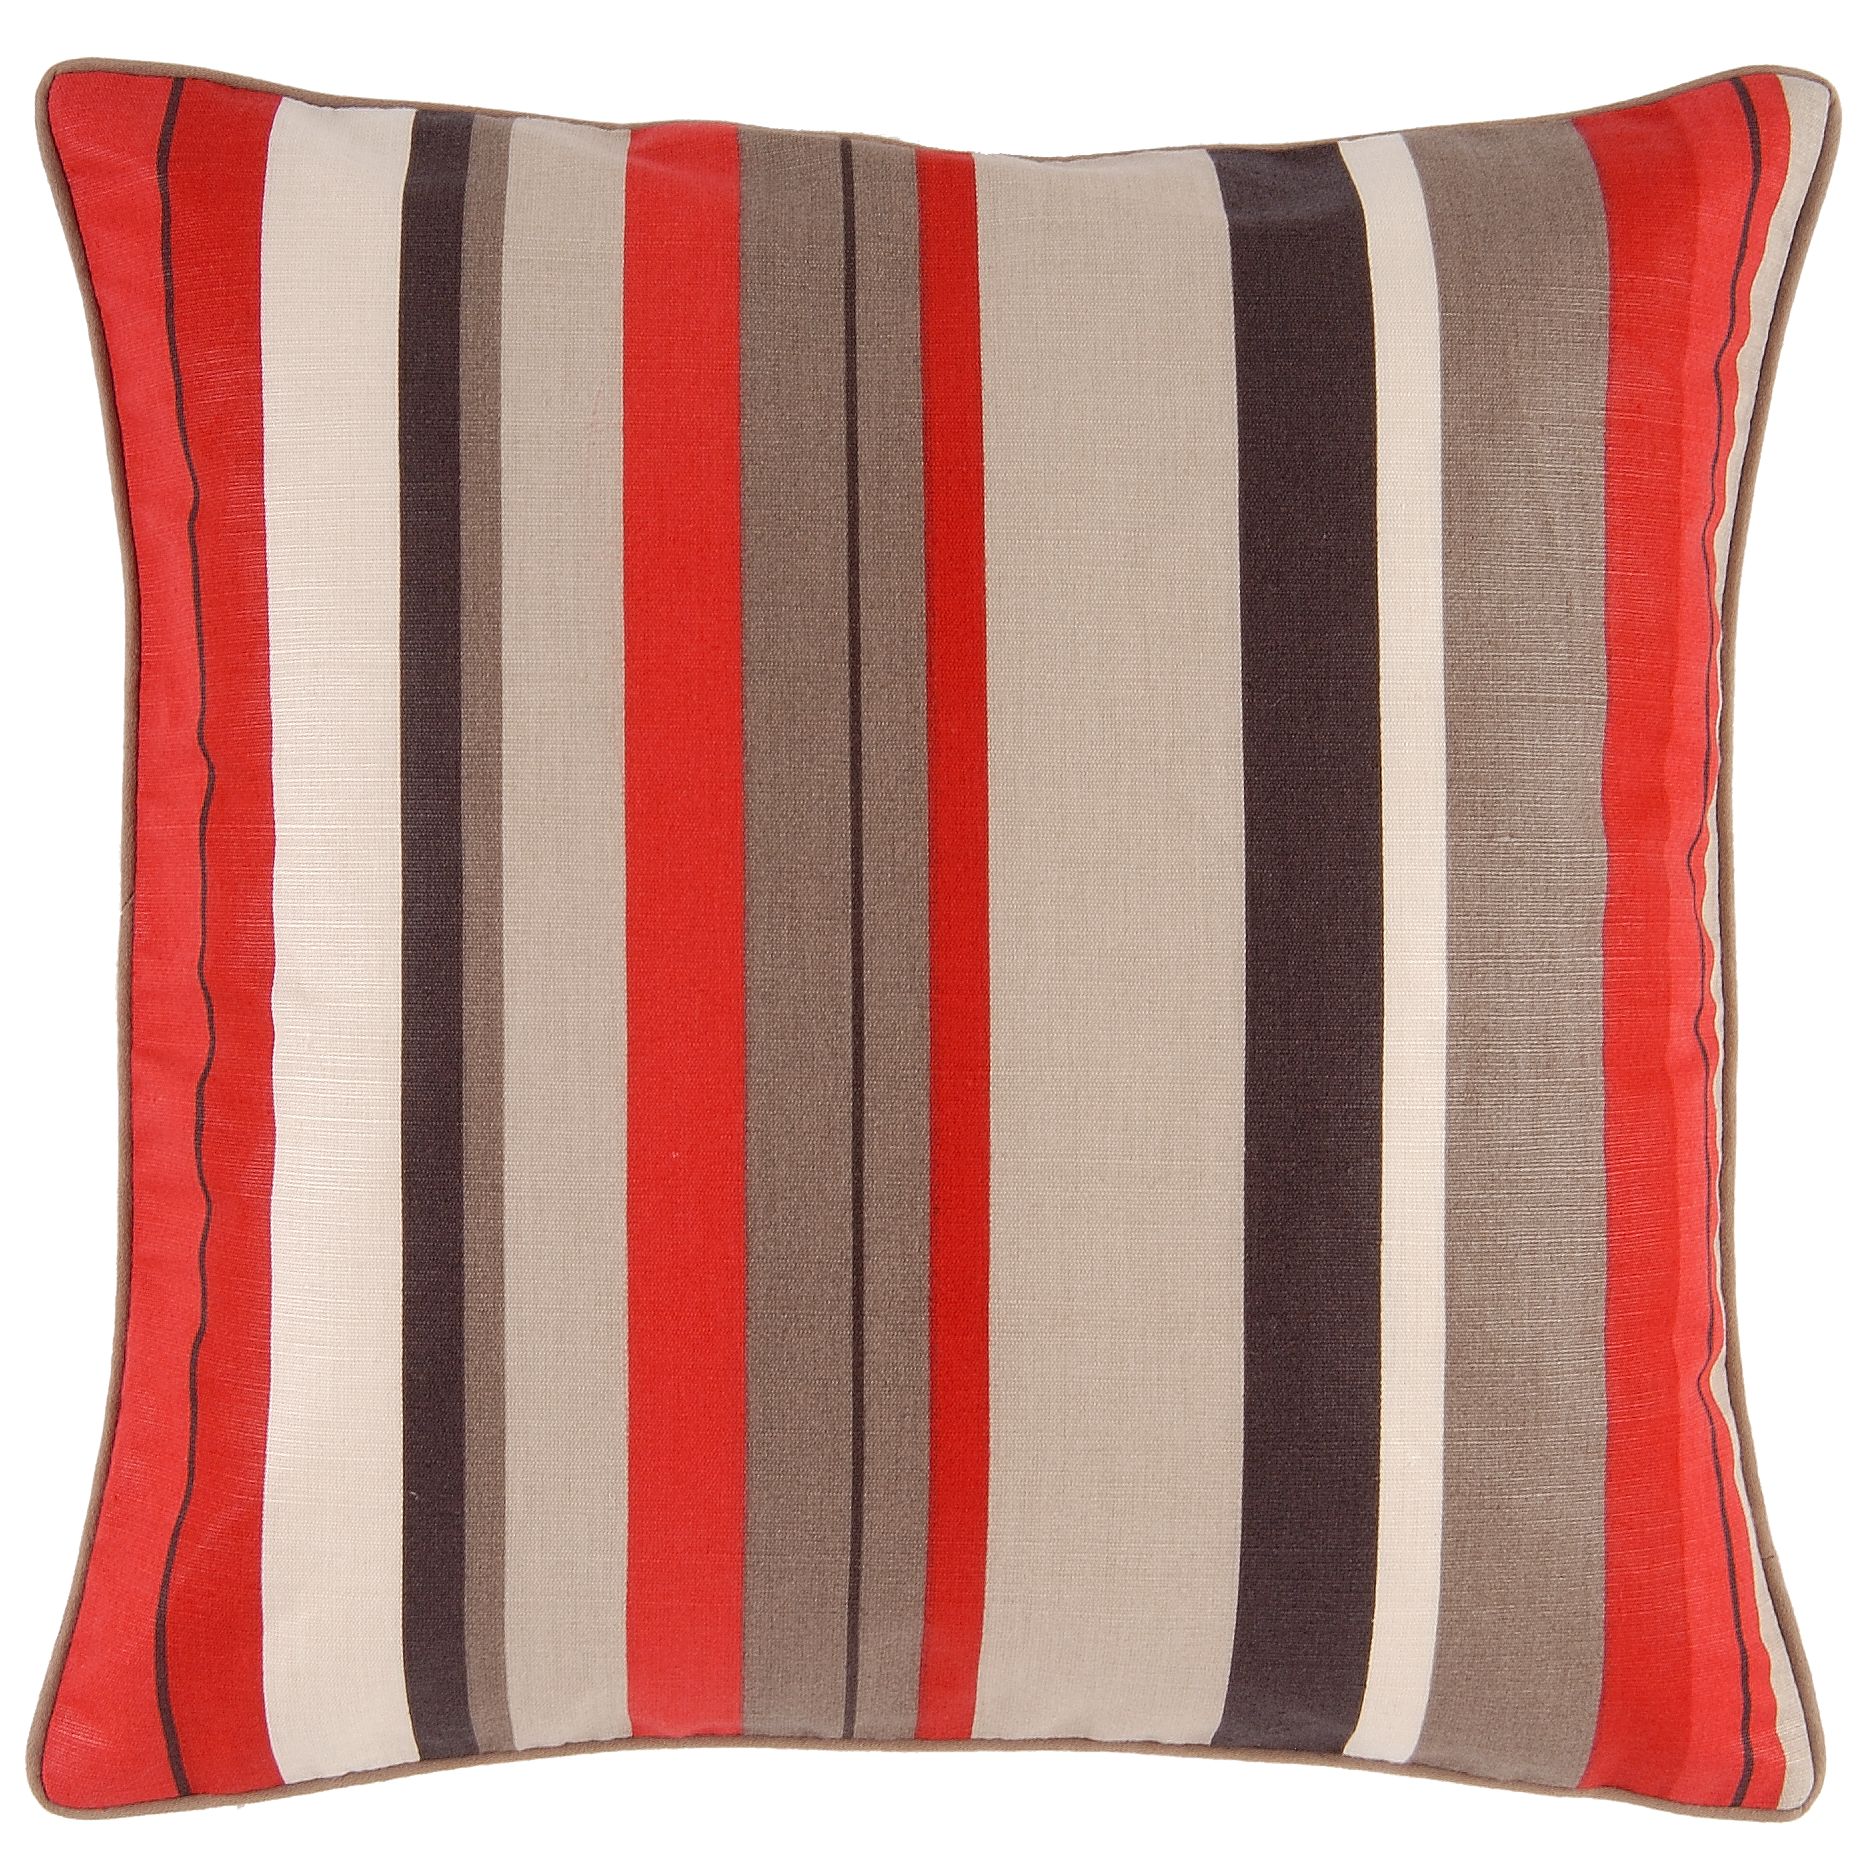 John Lewis Anoko Cushion, Red , One size